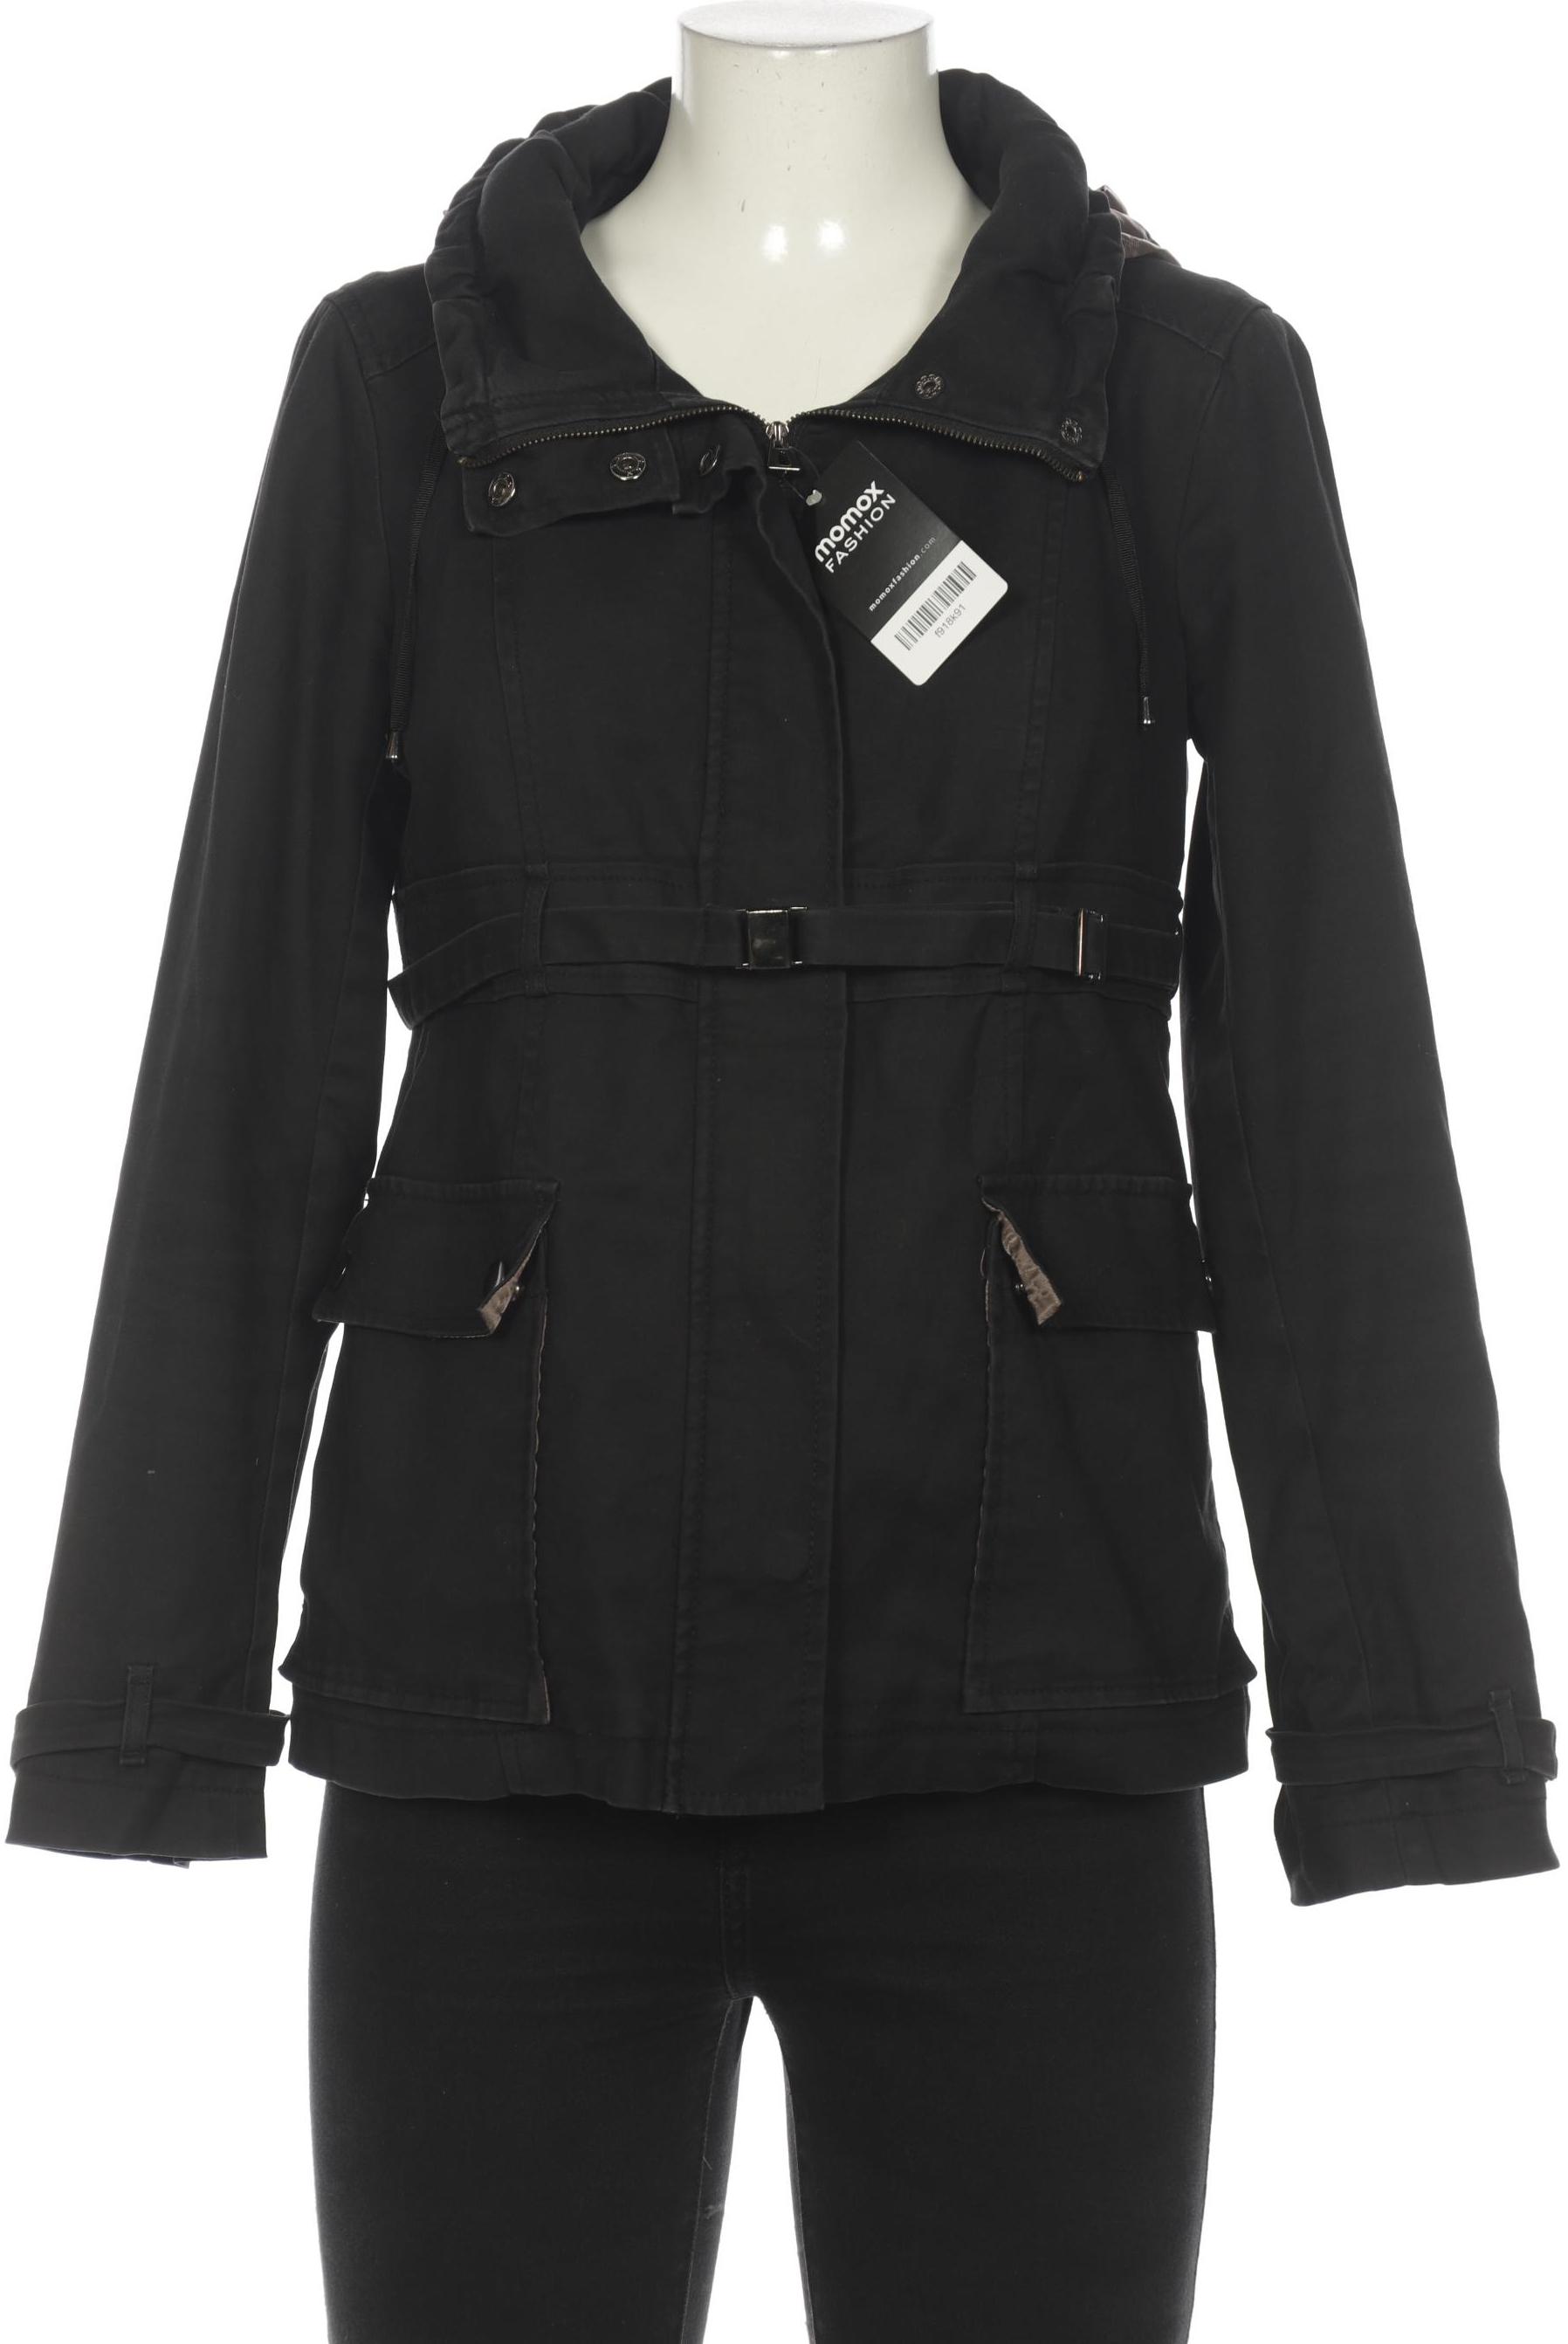 Zara Damen Jacke, schwarz, Gr. 42 von ZARA